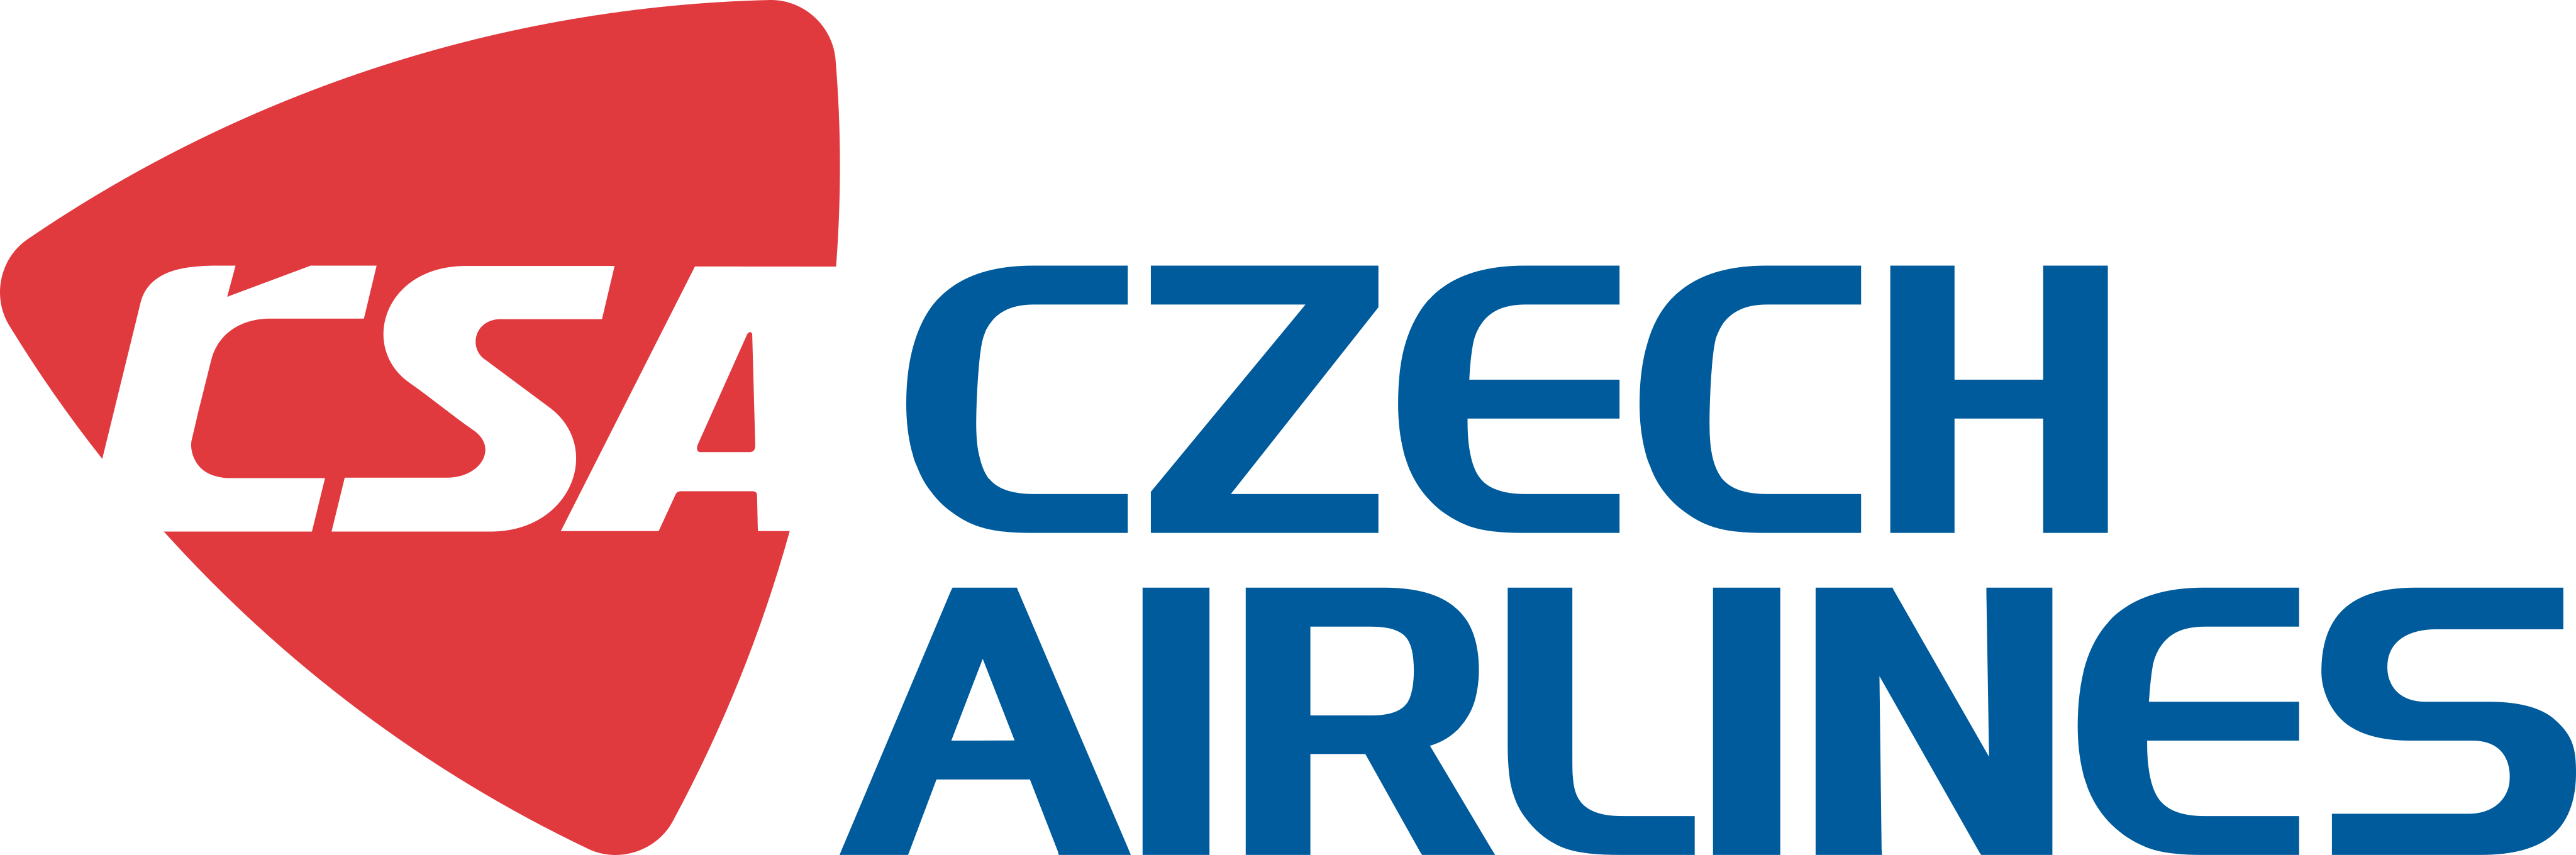 czech airlines logo - Czech Airlines Logo